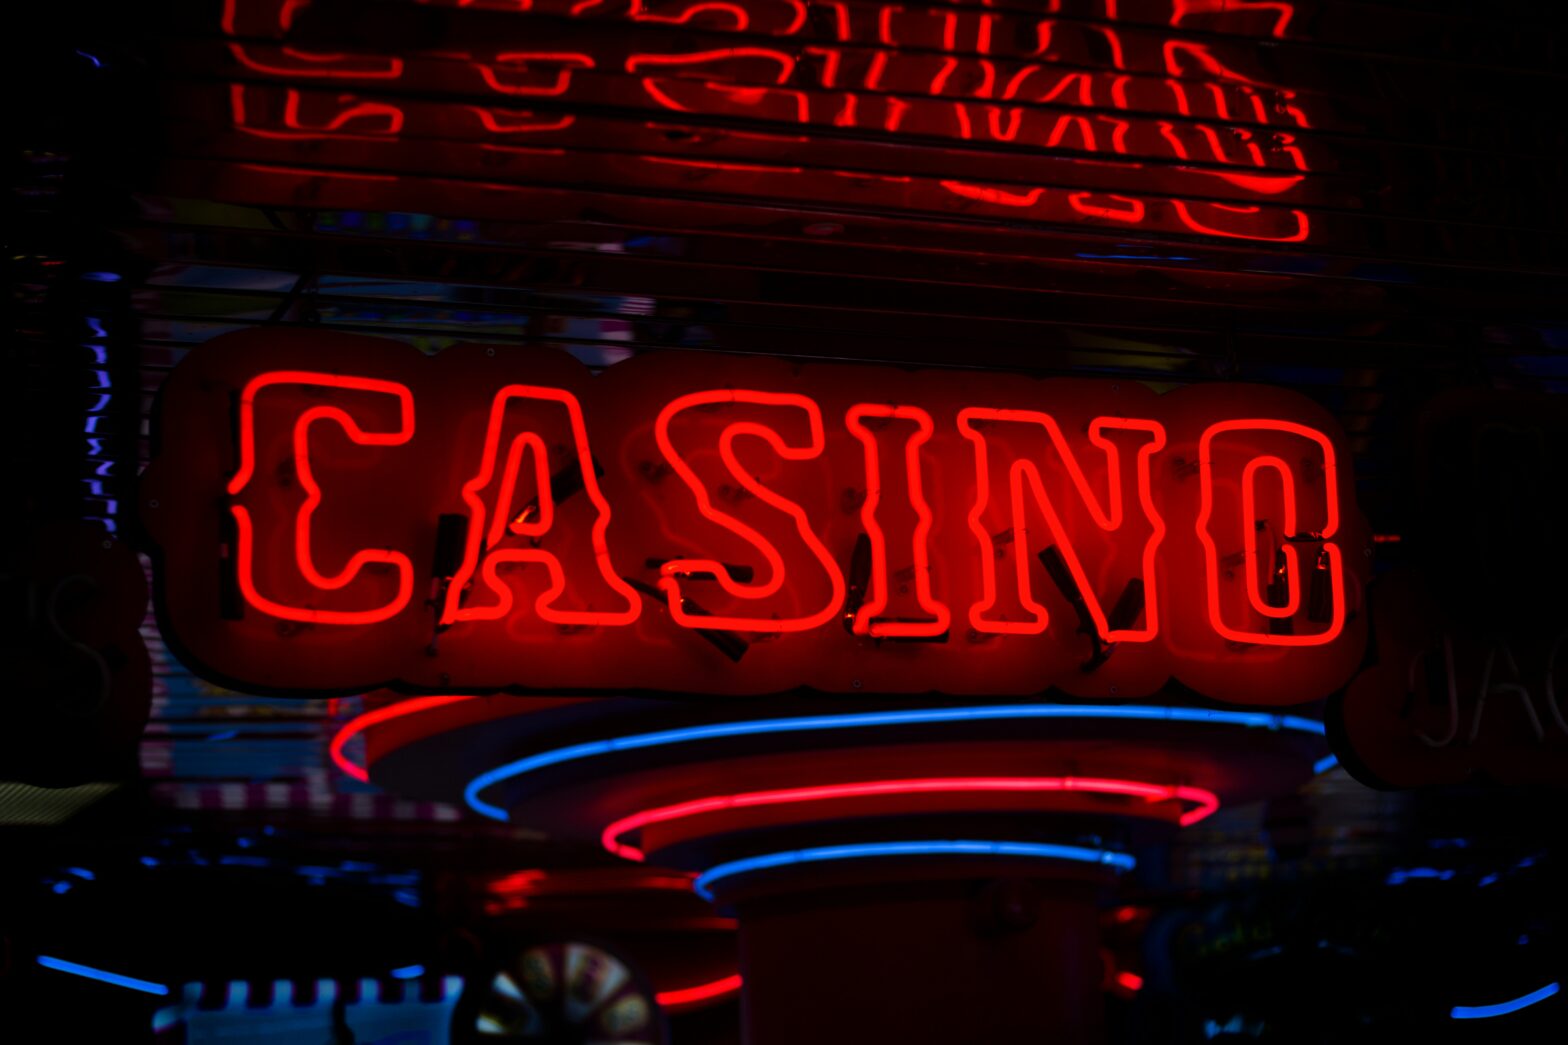 découvrez l'univers captivant du casino, ses jeux excitants et ses jackpots alléchants. plongez dans l'ambiance enivrante des salles de jeu pour une expérience unique et palpitante.